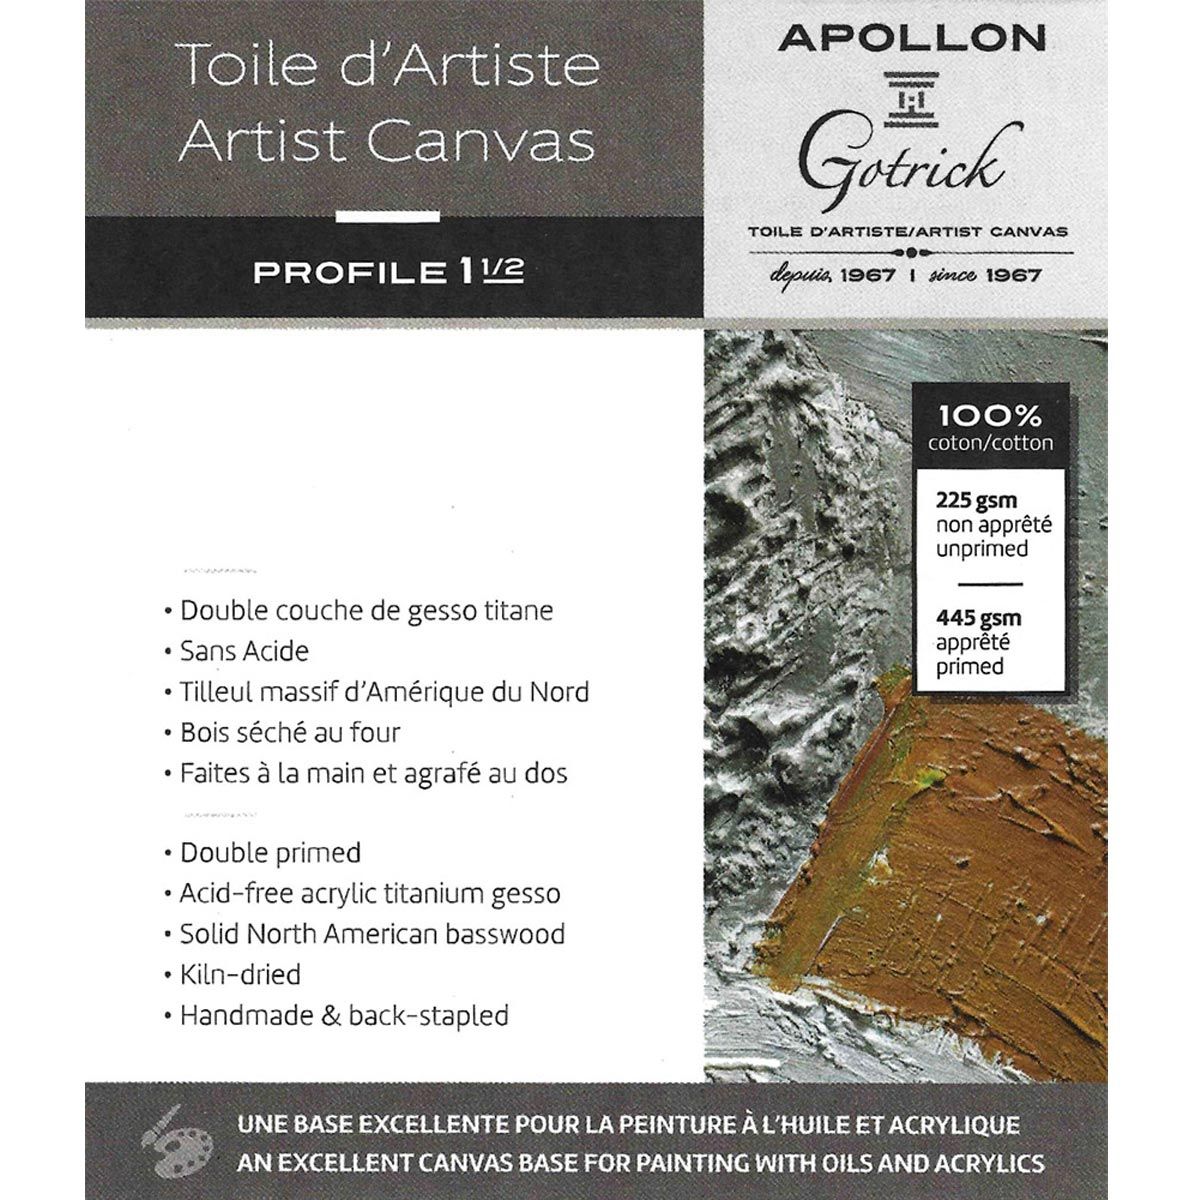 Apollon Gotrick Gallery Artist Canvas Profile 1½" - 36 x 48"